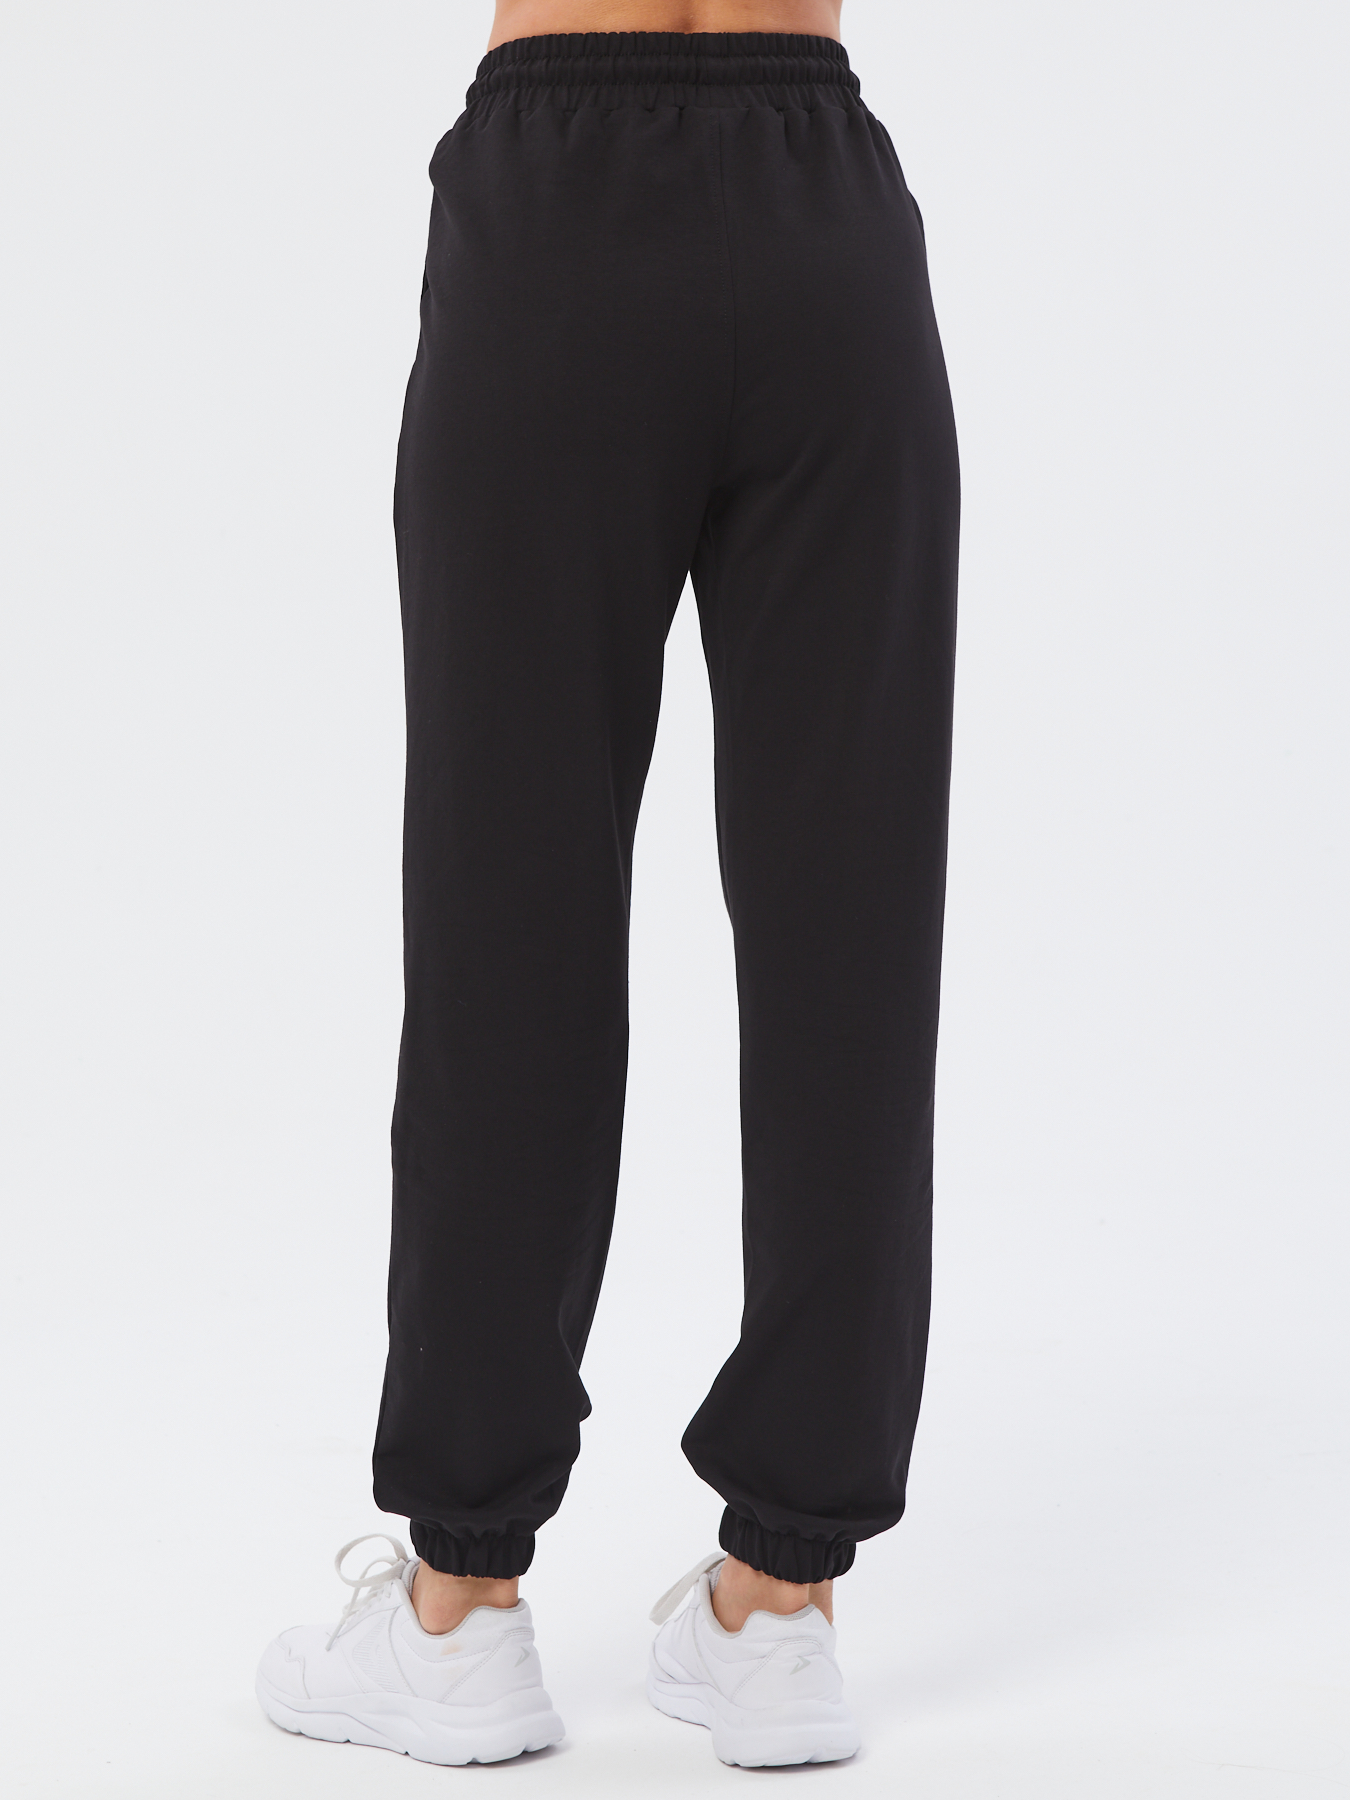 Спортивные брюки женские Still-expert б5 черные 50/150-165